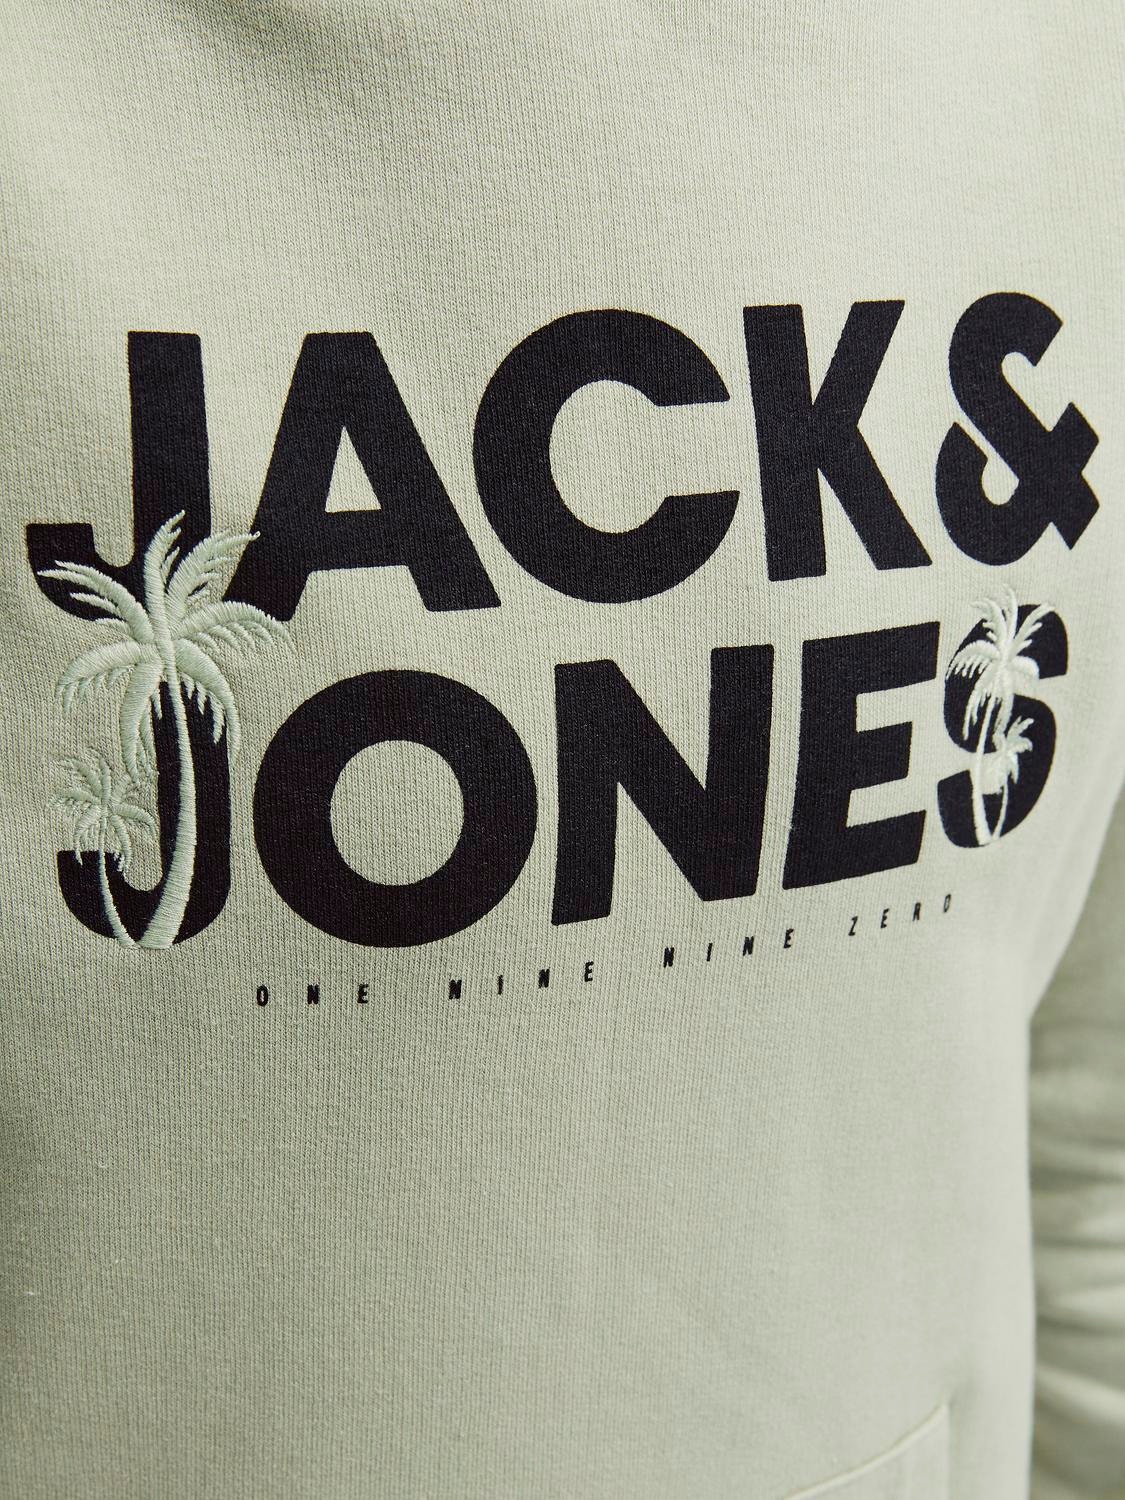 Jack & Jones Sweat à capuche Imprimé Pour les garçons -Desert Sage - 12249676